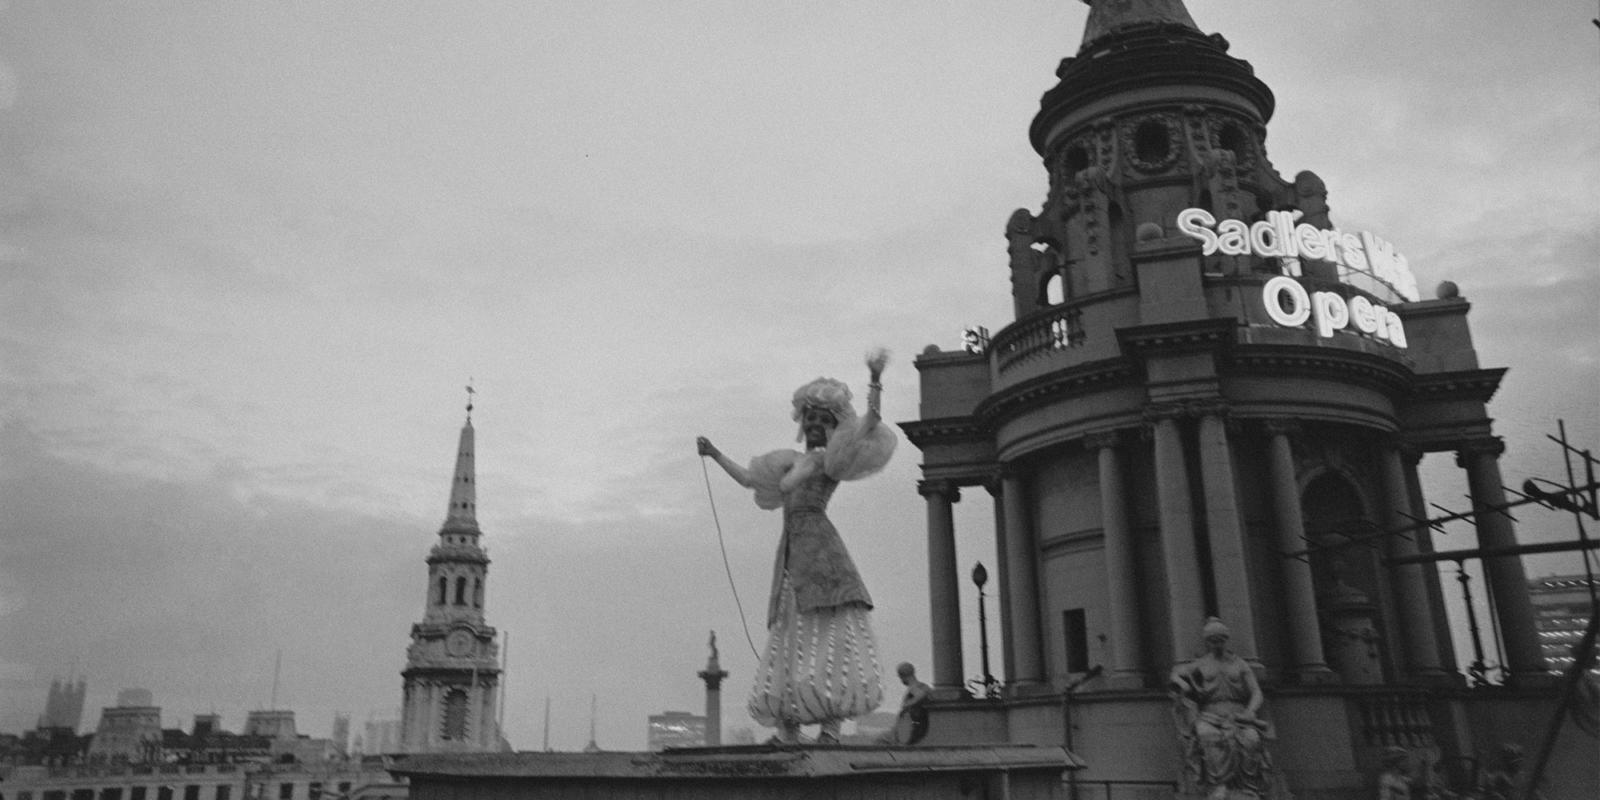 Ballet dancer Susan Hunt lights up London Coliseum's globe after repairs, 1968 (c) Maher/Stringer